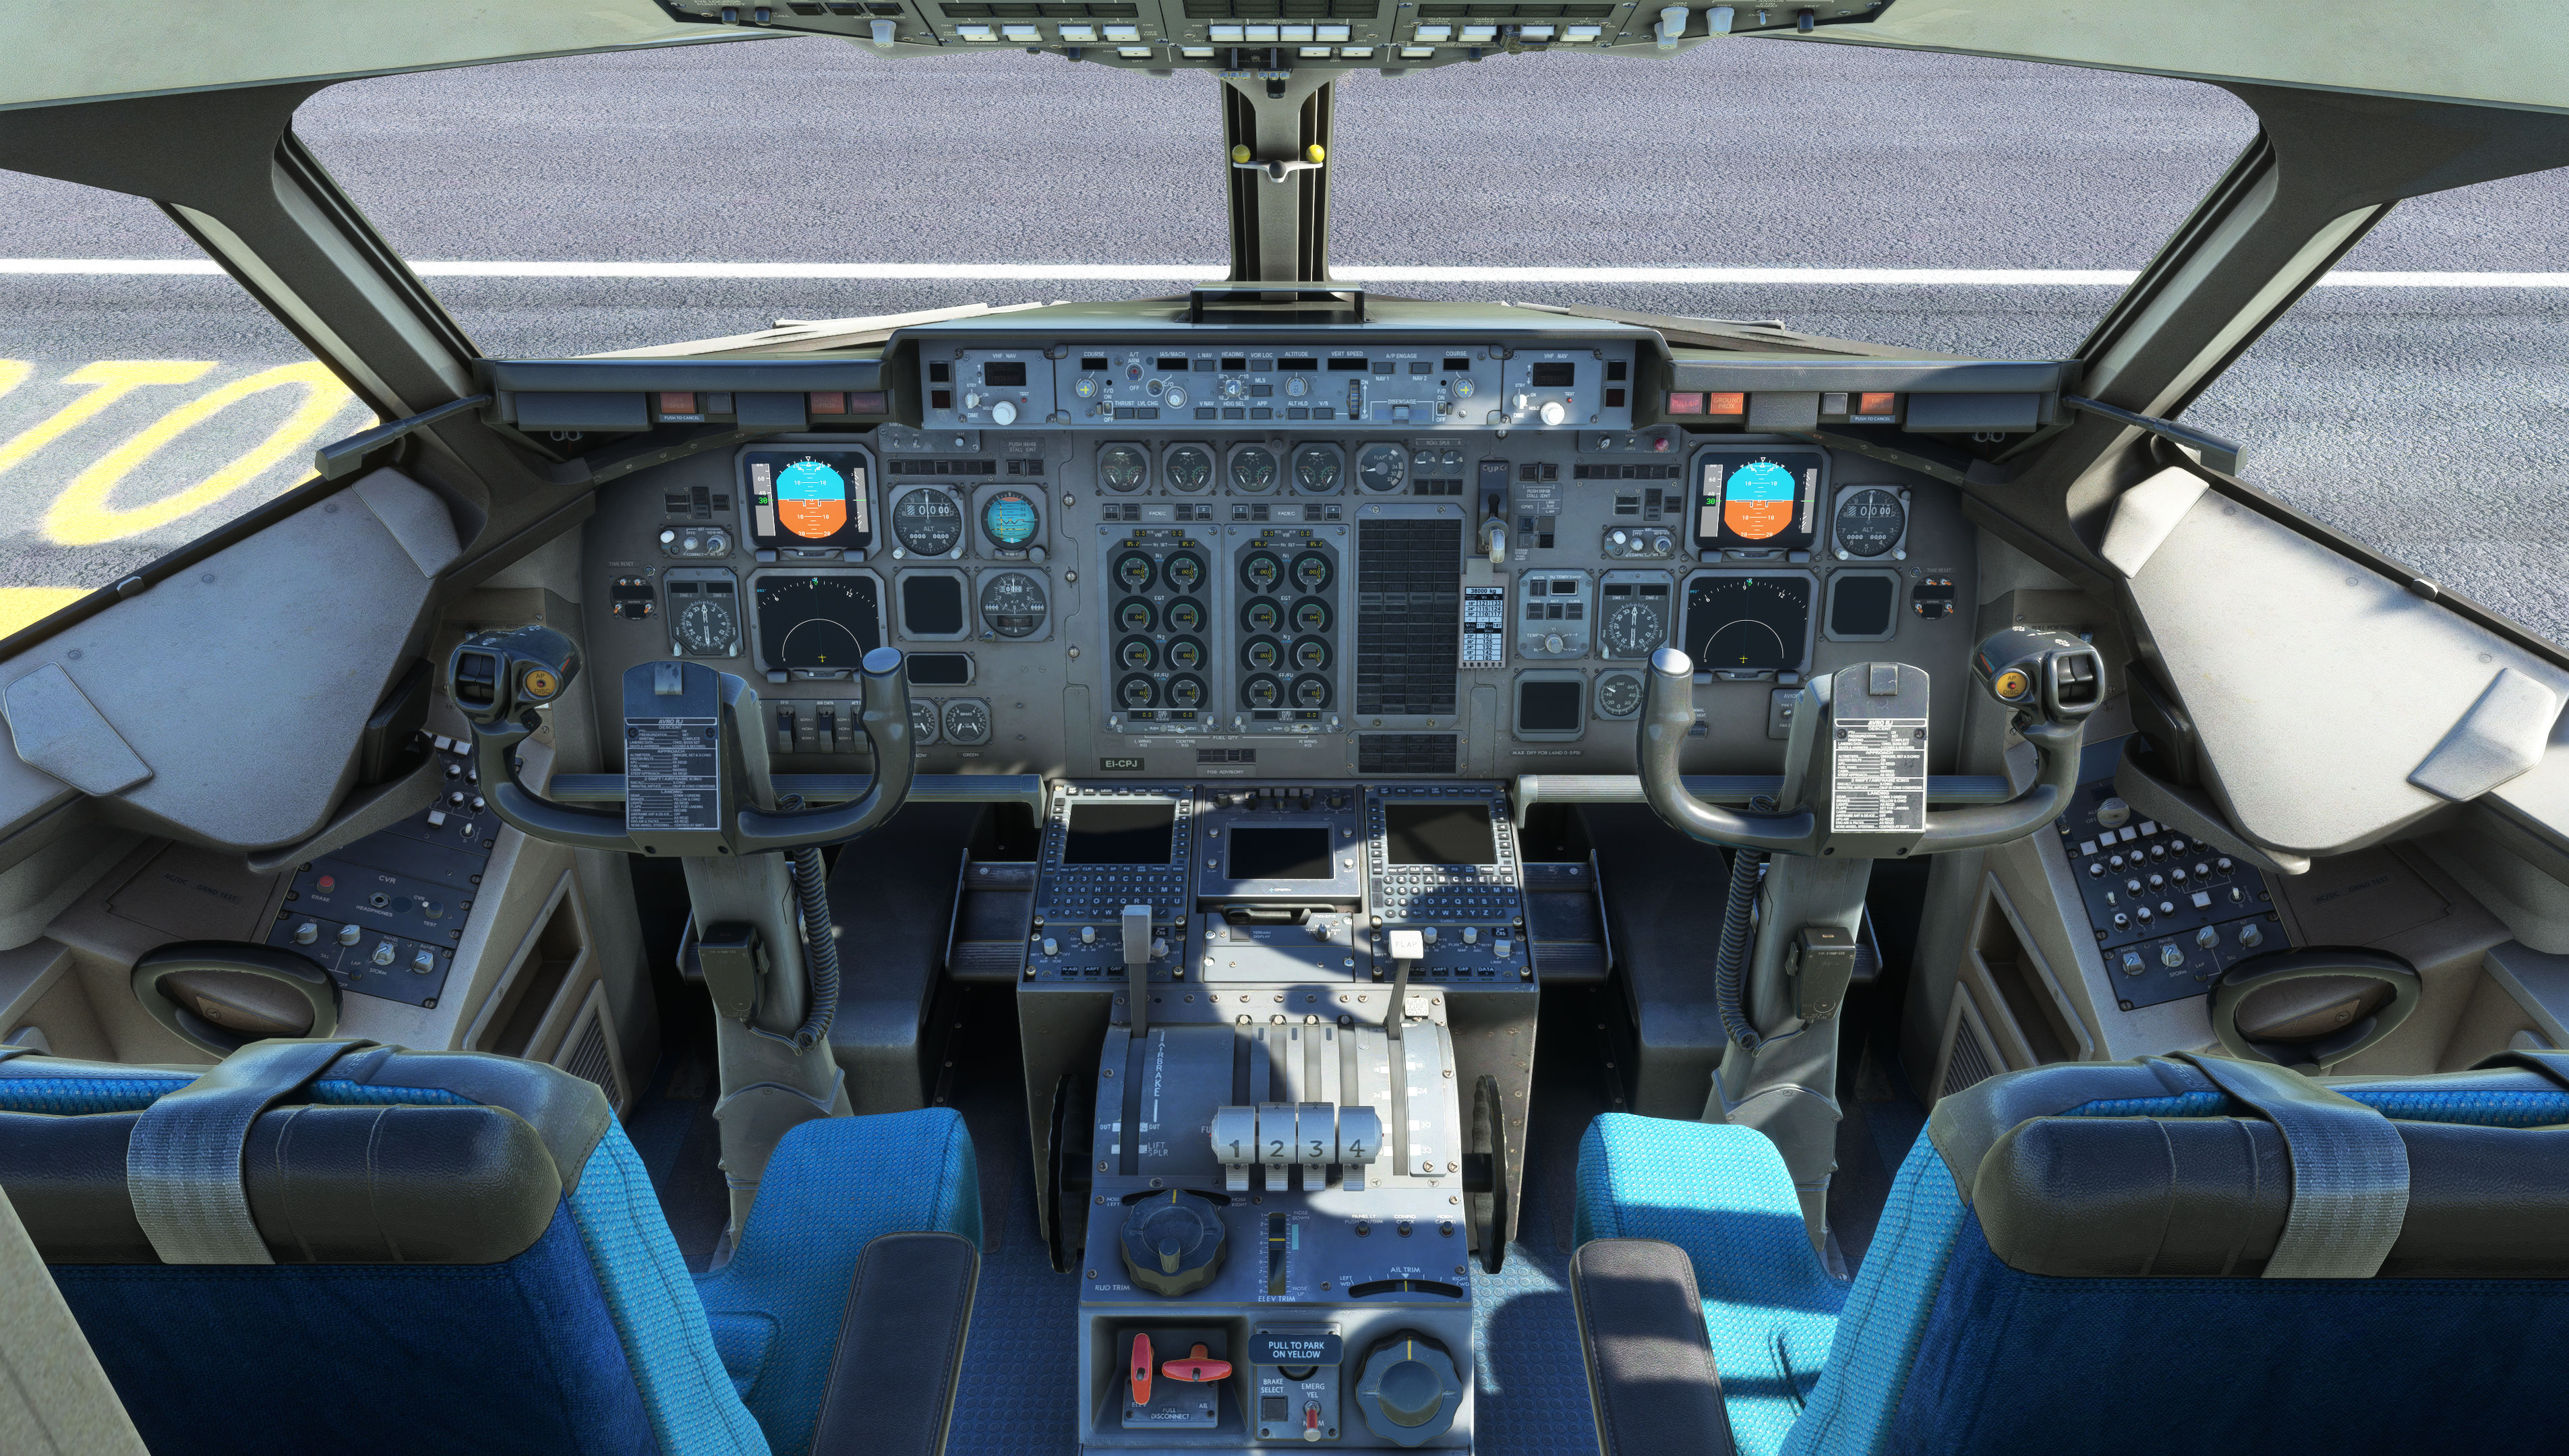 RJ_Cockpit_1_0AMF2XOI2.PNG